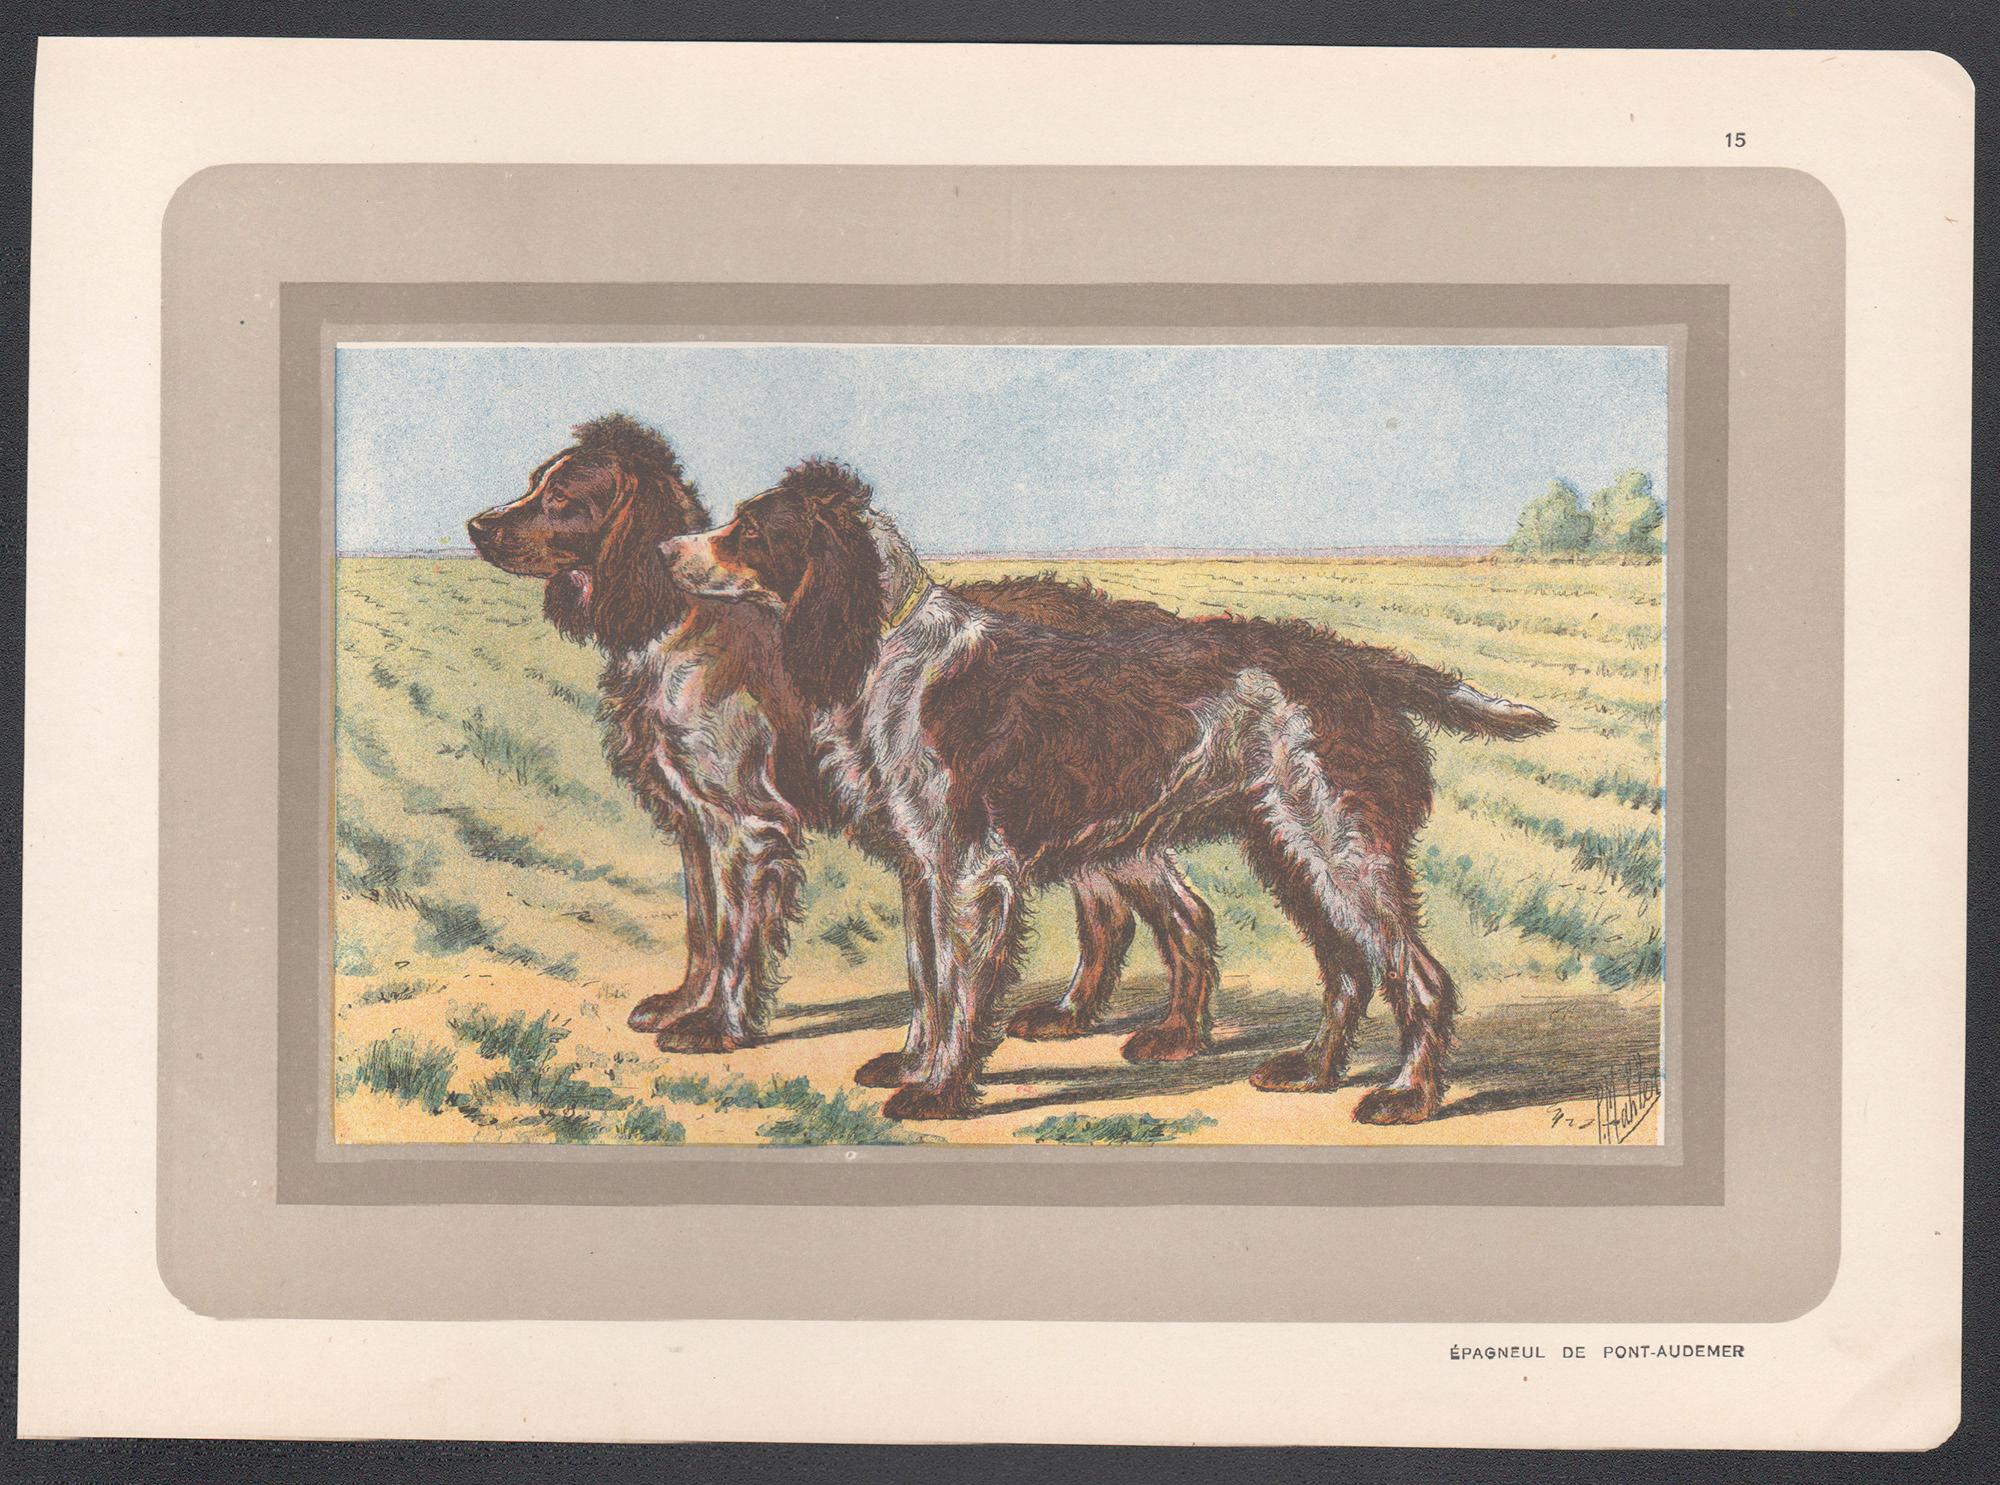 Pont-Audemer Spaniel, impression chromolithographie de chien de chasse français, années 1930 - Print de P. Mahler